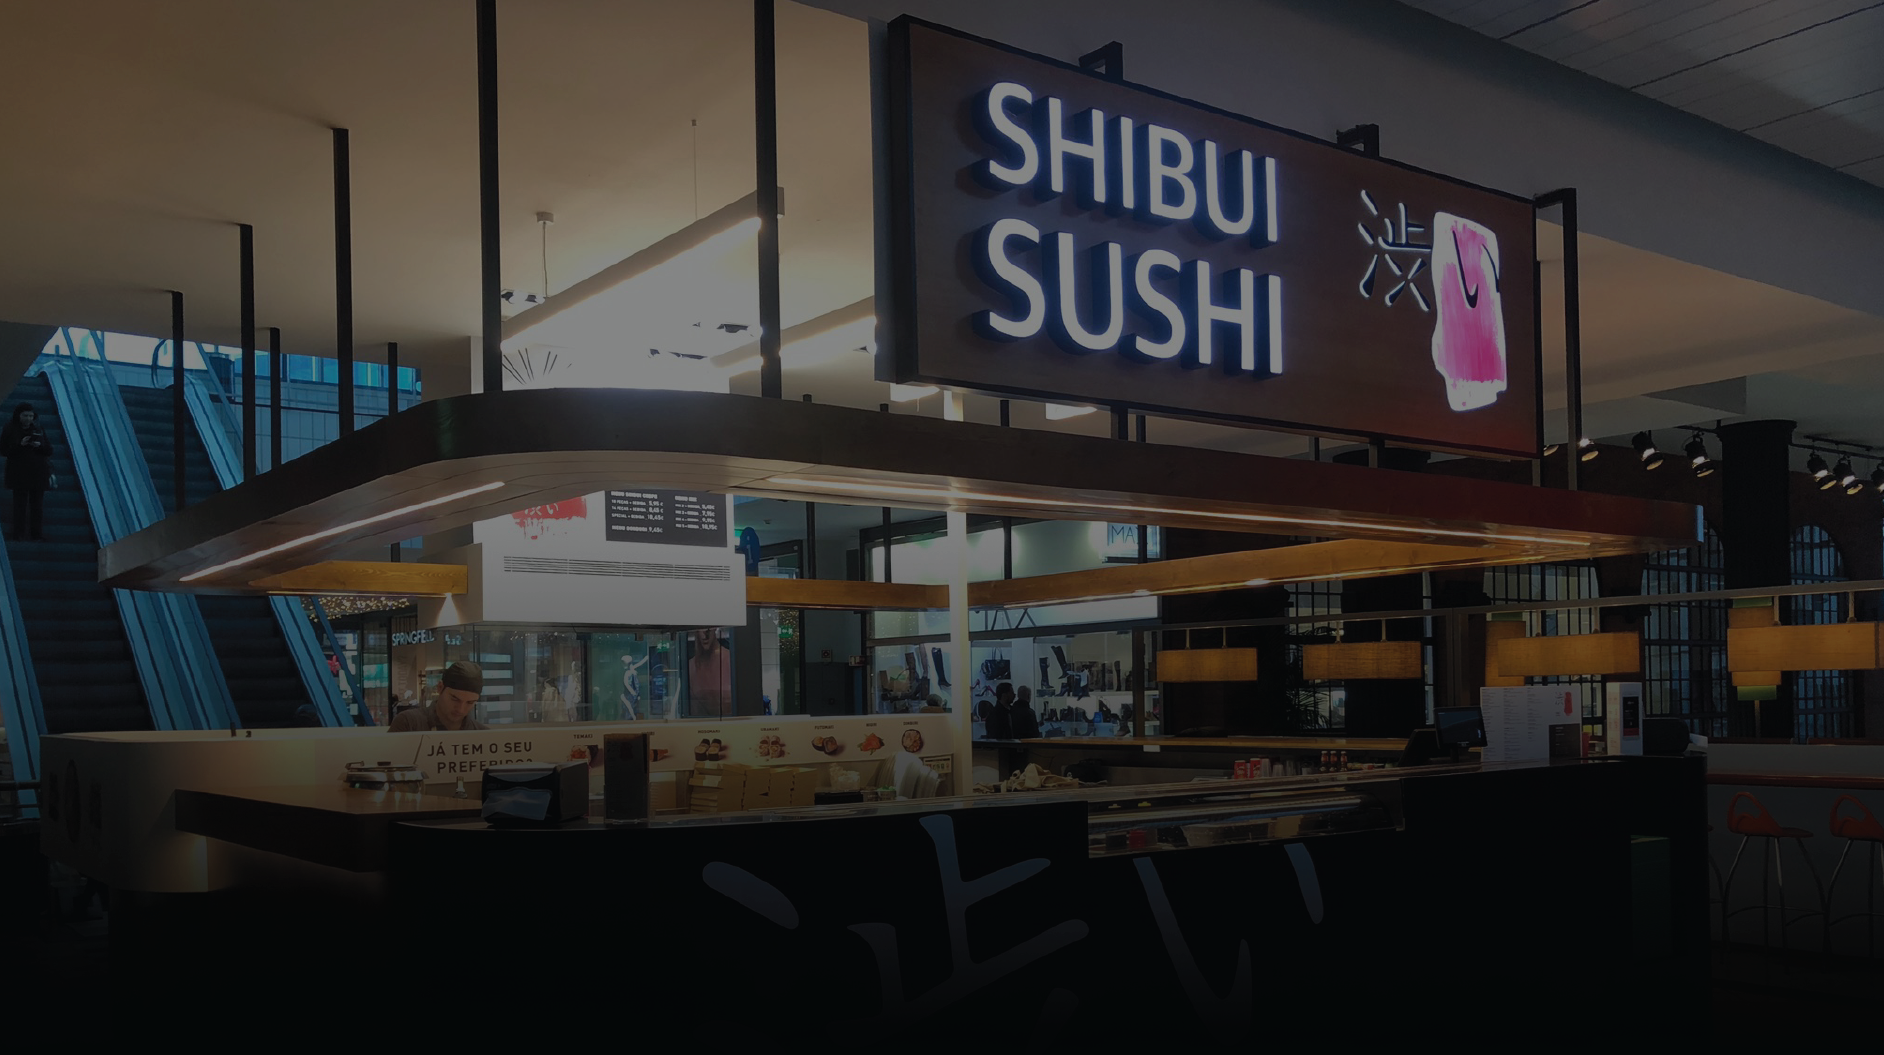 Shibui Sushi - Os sabores do Japão estão bem perto de si!